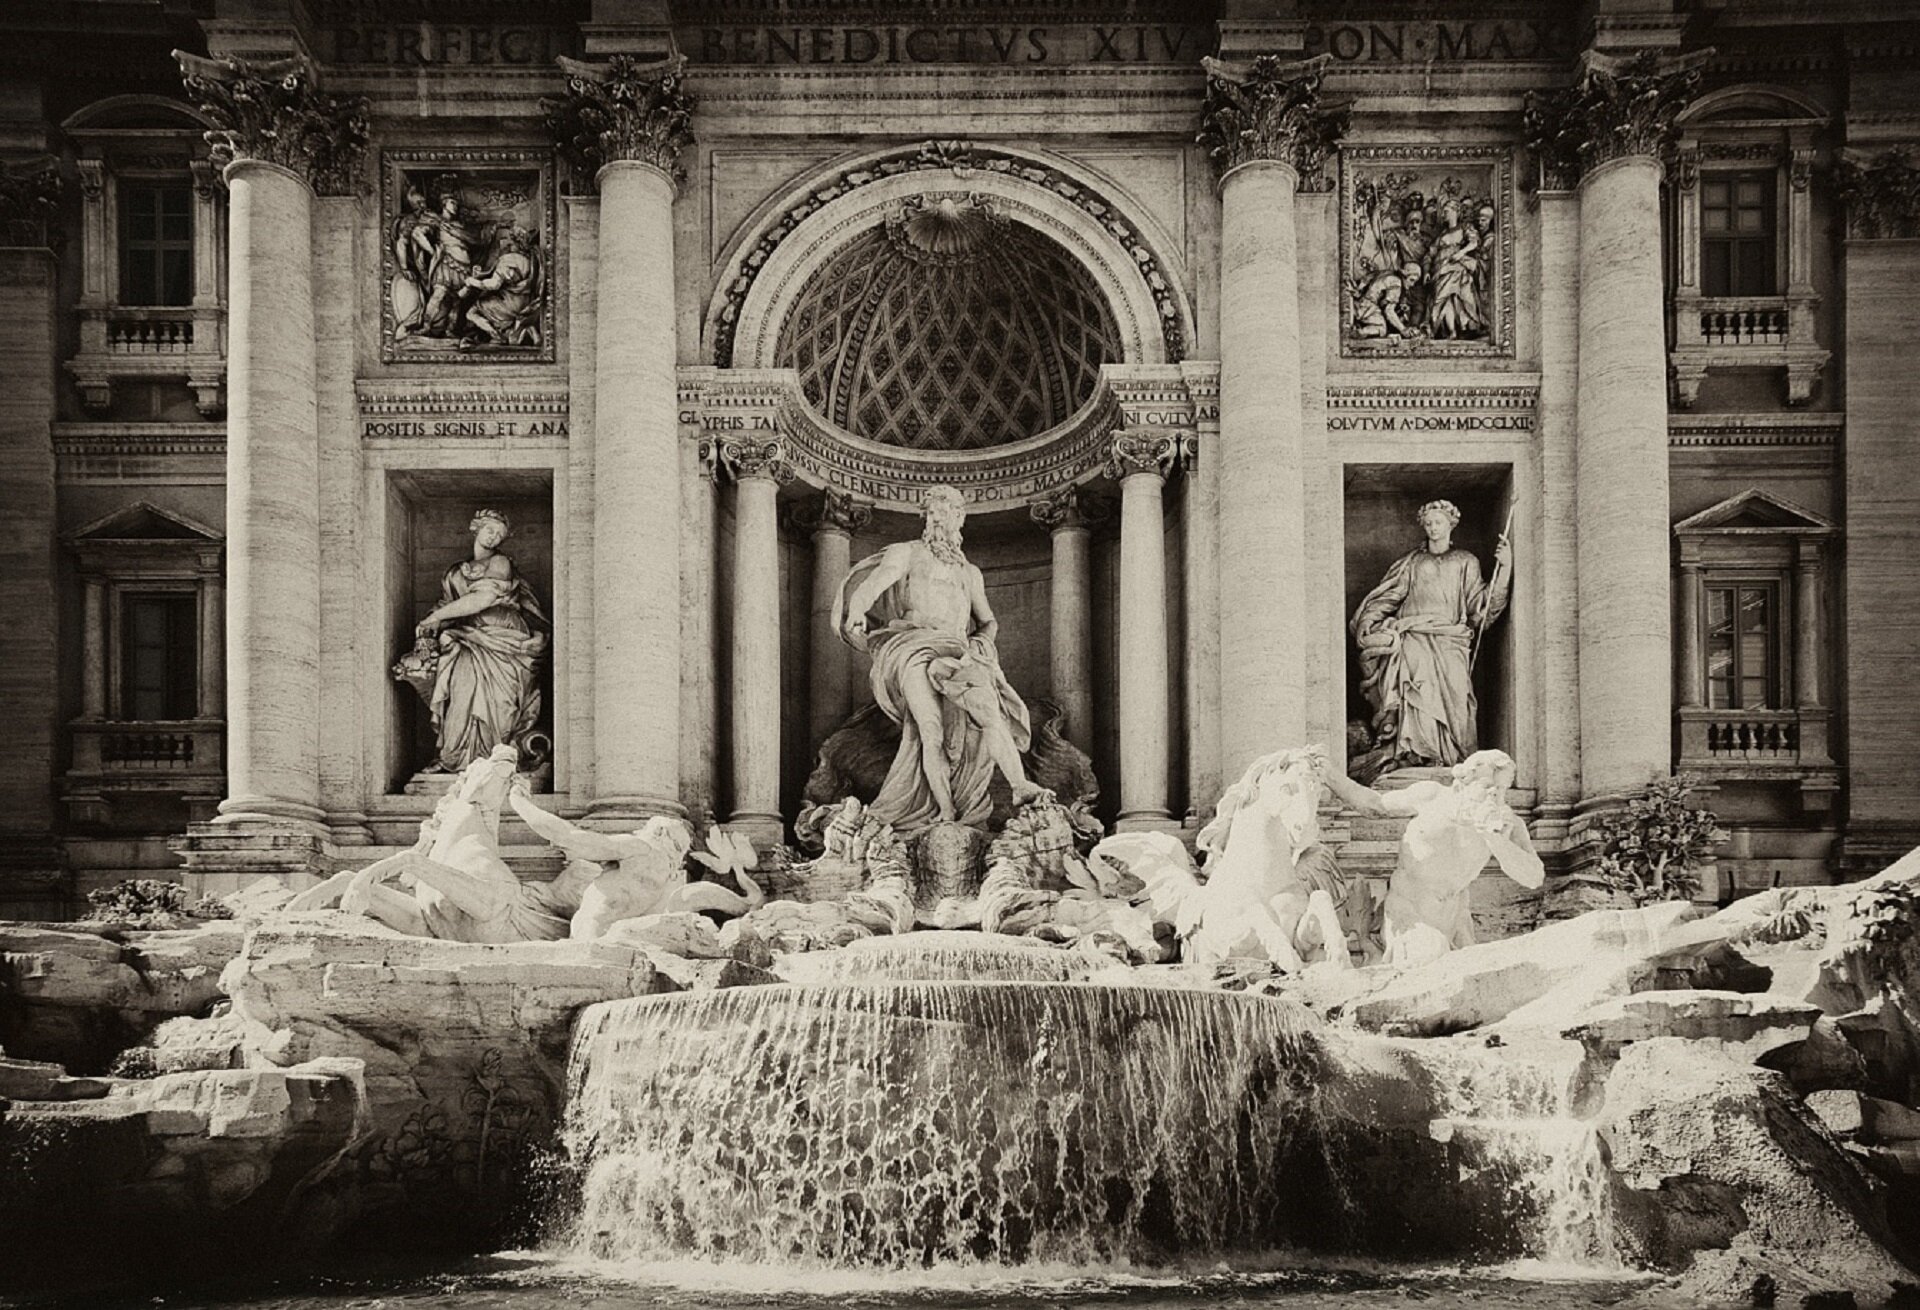 Ilustracja przedstawia Fontannę di Trevi. W centralnej części znajduje się posąg Neptuna, rzymskiego boga wód, chmur i deszczu. Neptun stoi na rydwanie, zaprzęgniętym w hippokampy – pół-konie, pół-ryby. Hippokampy są ujarzmiane przez Trytony – pół-ludzi, pół-ryby. Z lewej strony jeden tryton ujarzmia niespokojnego, rozdrażnionego hippokampa, drugi tryton, z prawej strony trzyma łagodnego, spokojnego pół-konia, pół-rybę.